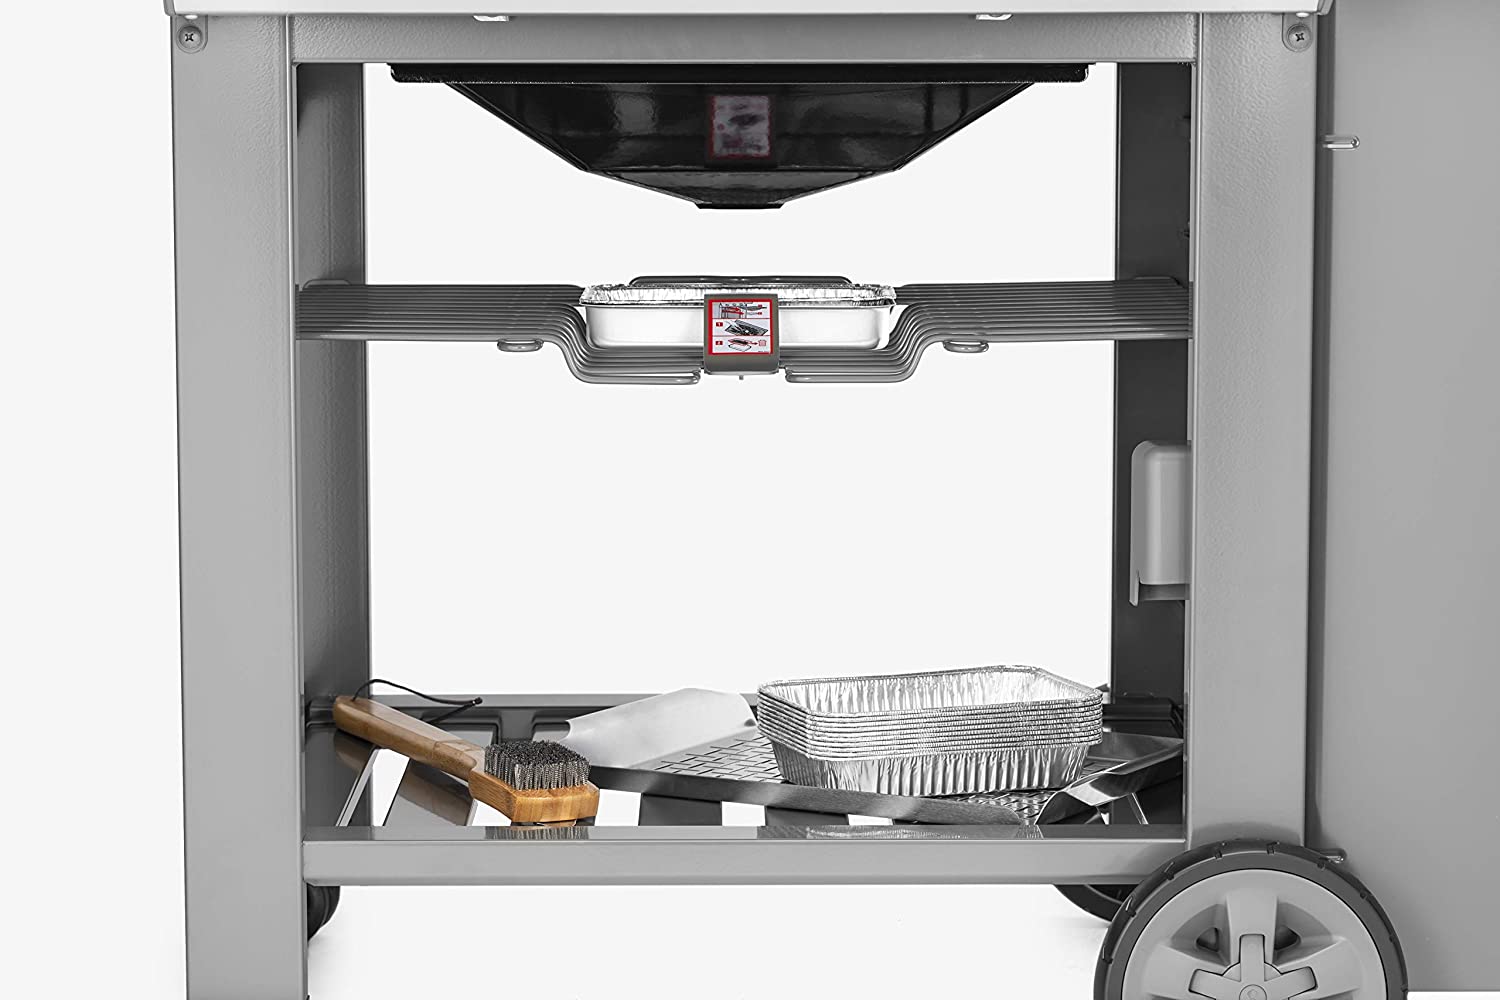 Open cart design bottom shelf Weber Genesis II E-310 Grill review